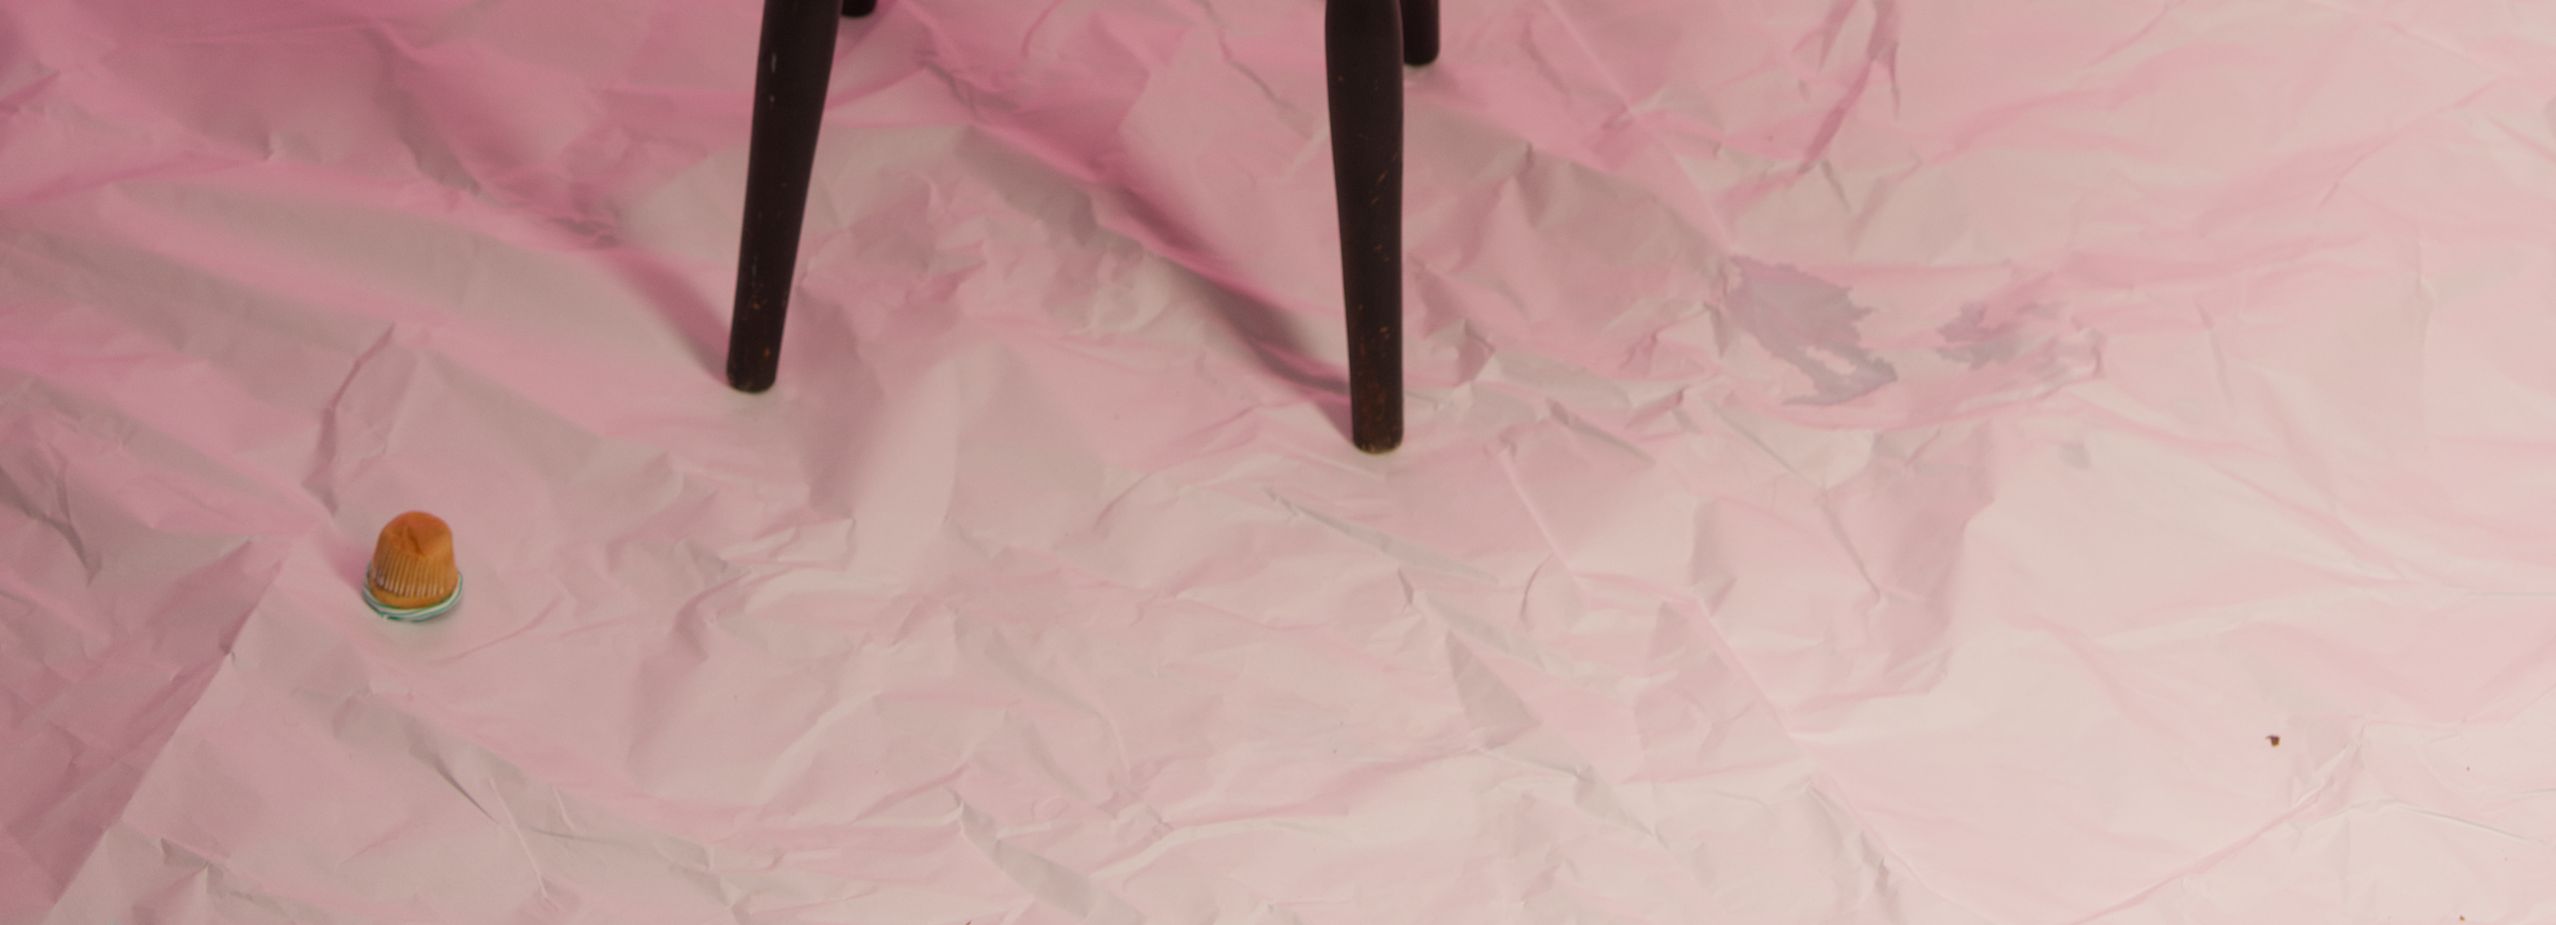 Ein heruntergefallener Muffin auf rosa Stoffboden, daneben Beine eines Barhockers